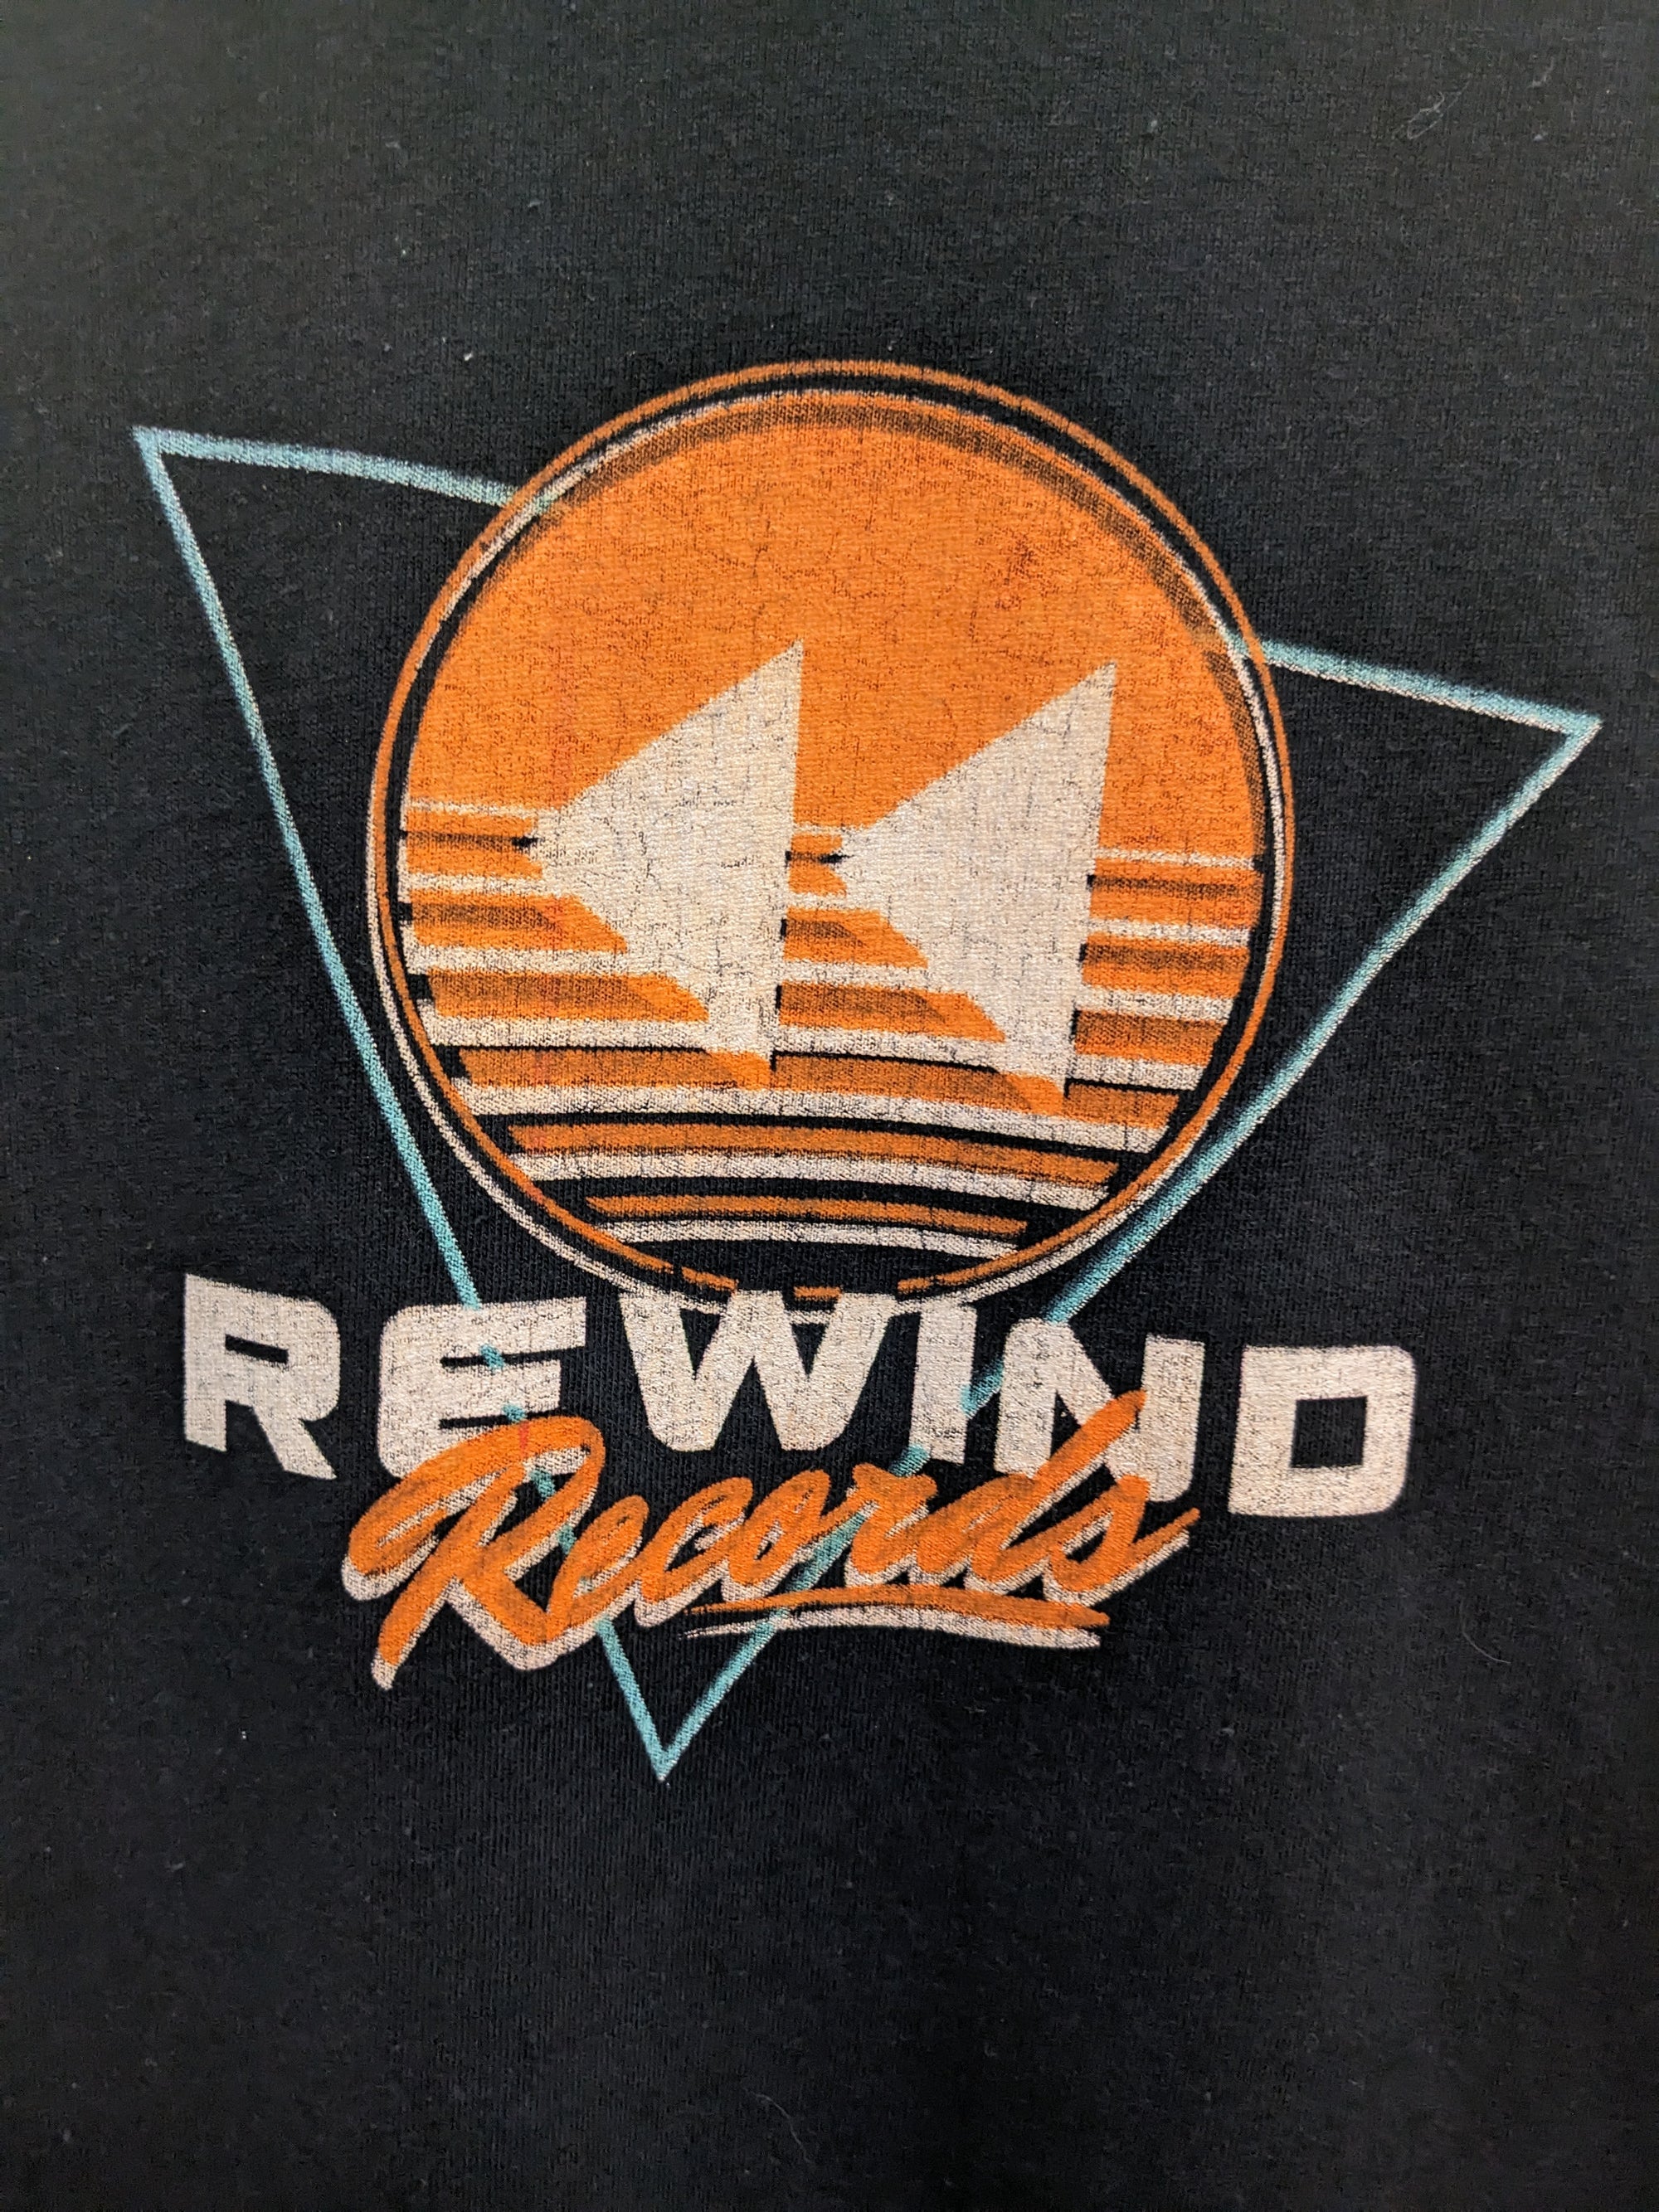 Rewind Records Misprint - Small